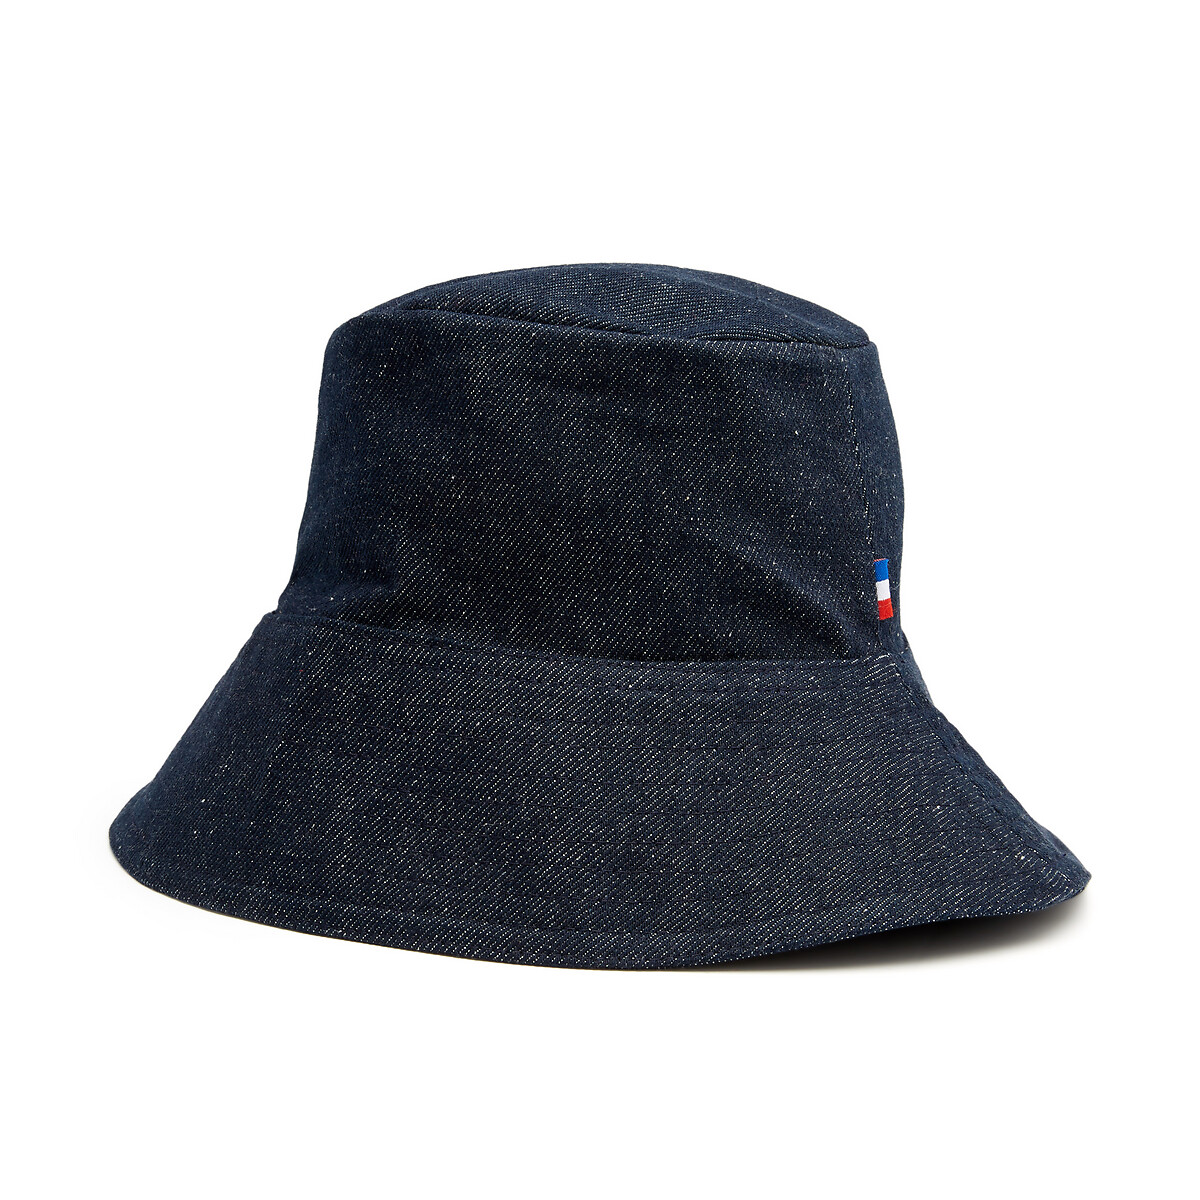 Шляпа La Redoute Из денима 54 см синий, размер 54 см